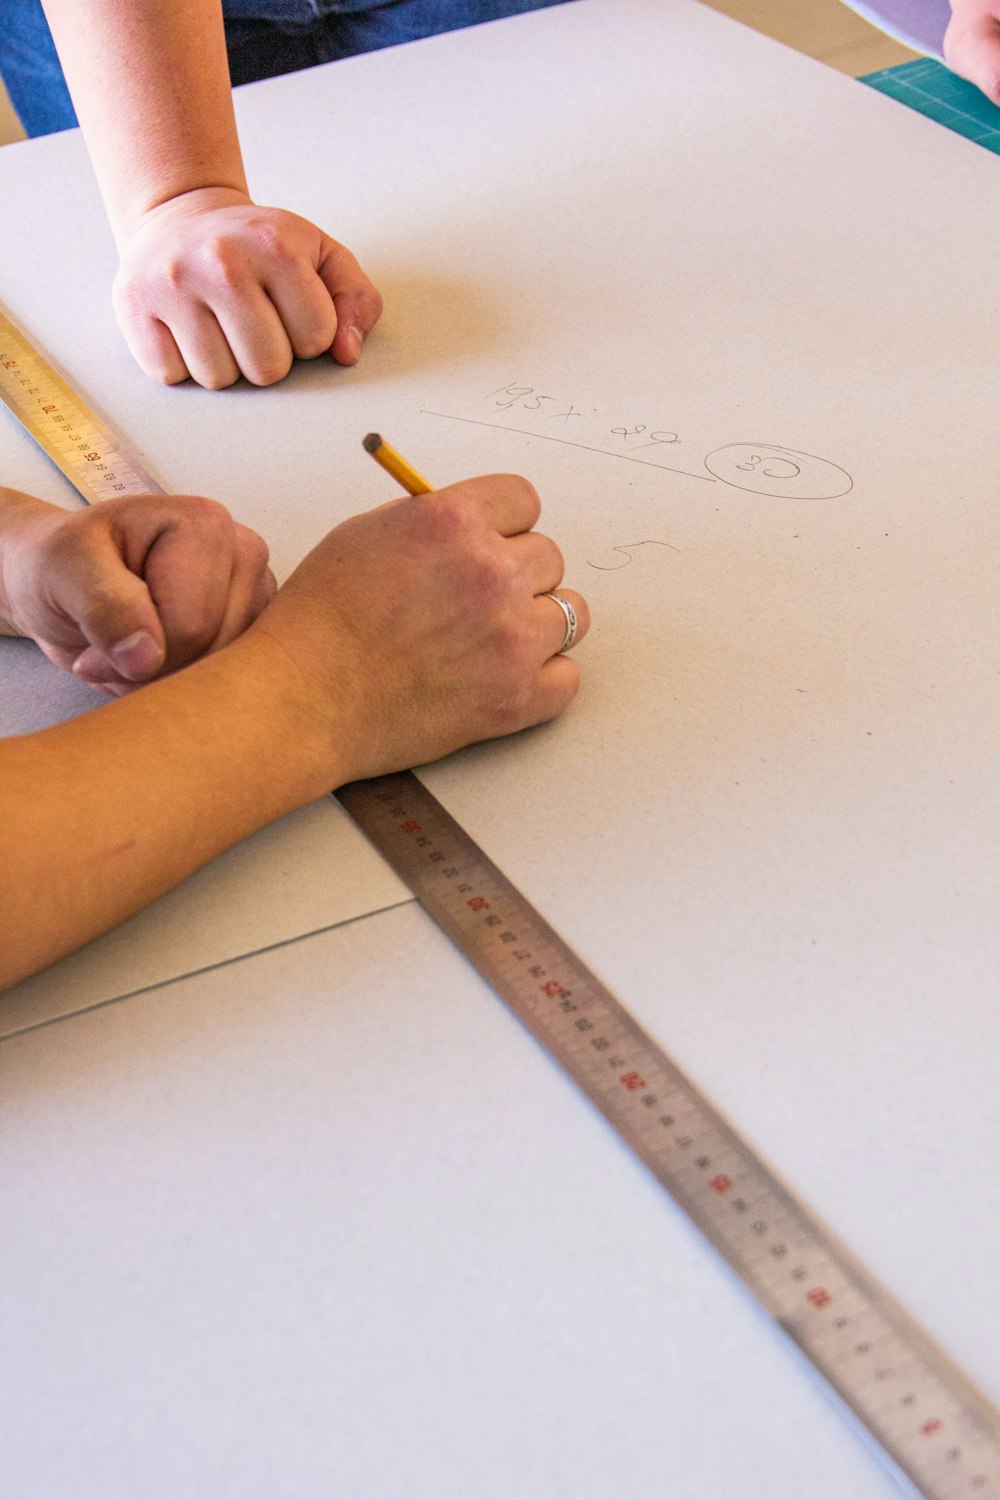 Dos personas están dibujando en un pedazo de papel